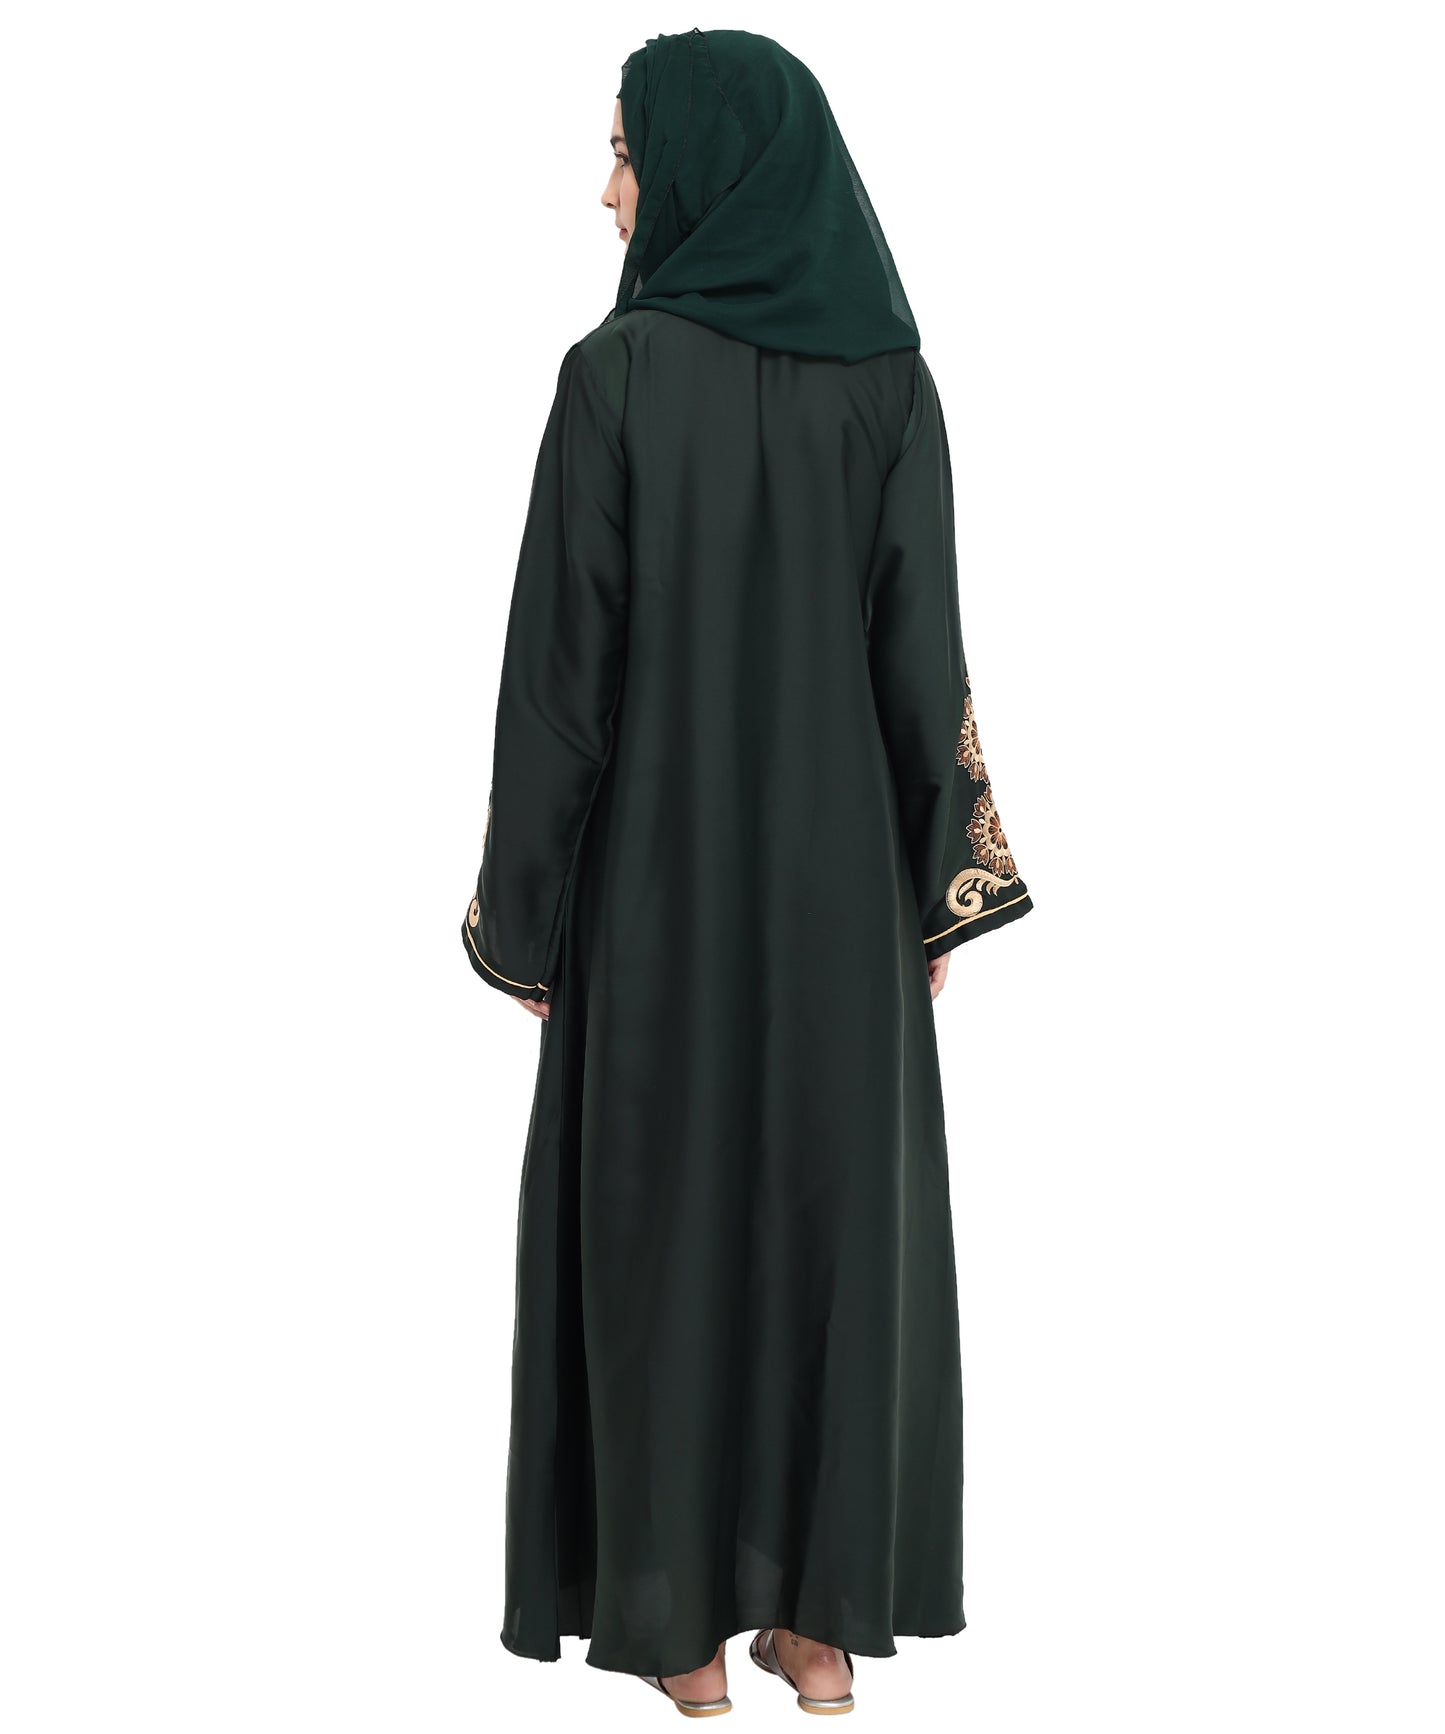 Beautiful Self Design Green Art Silk Abaya With Hijab_0807